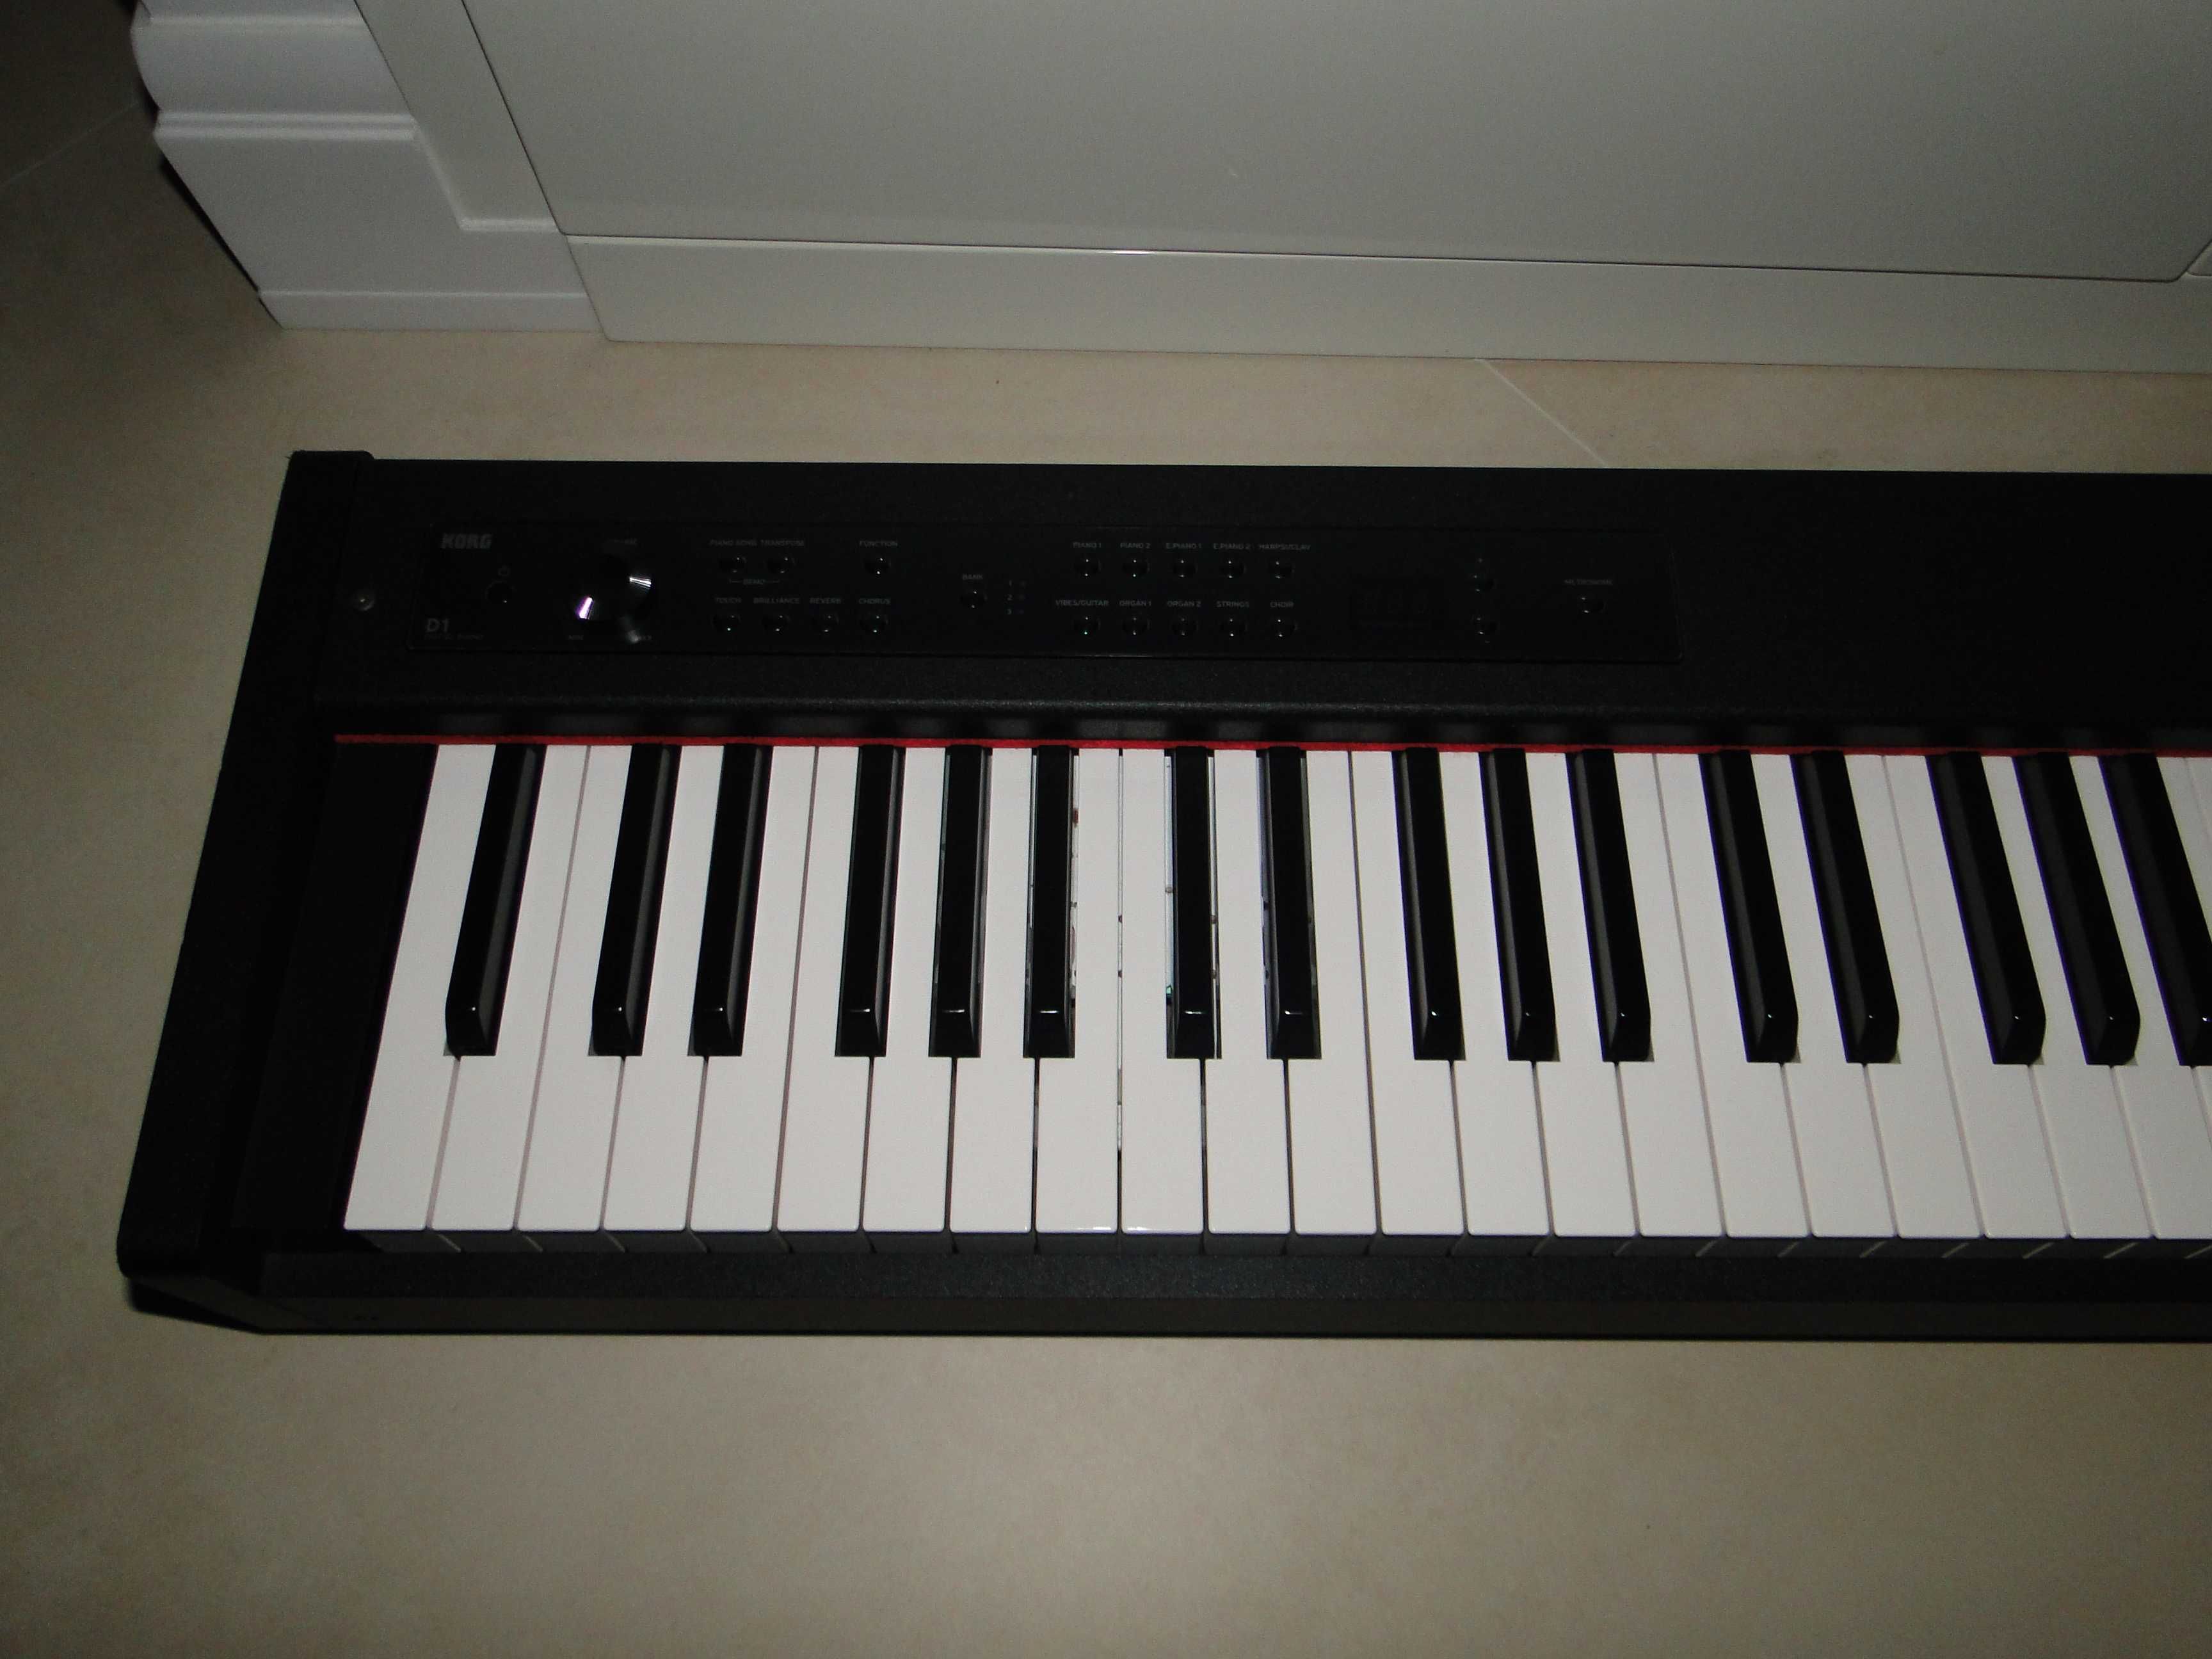 Znakomite Piano Cyfrowe KORG D1.Piękne Brzmienia.Mega Okazja.Warto